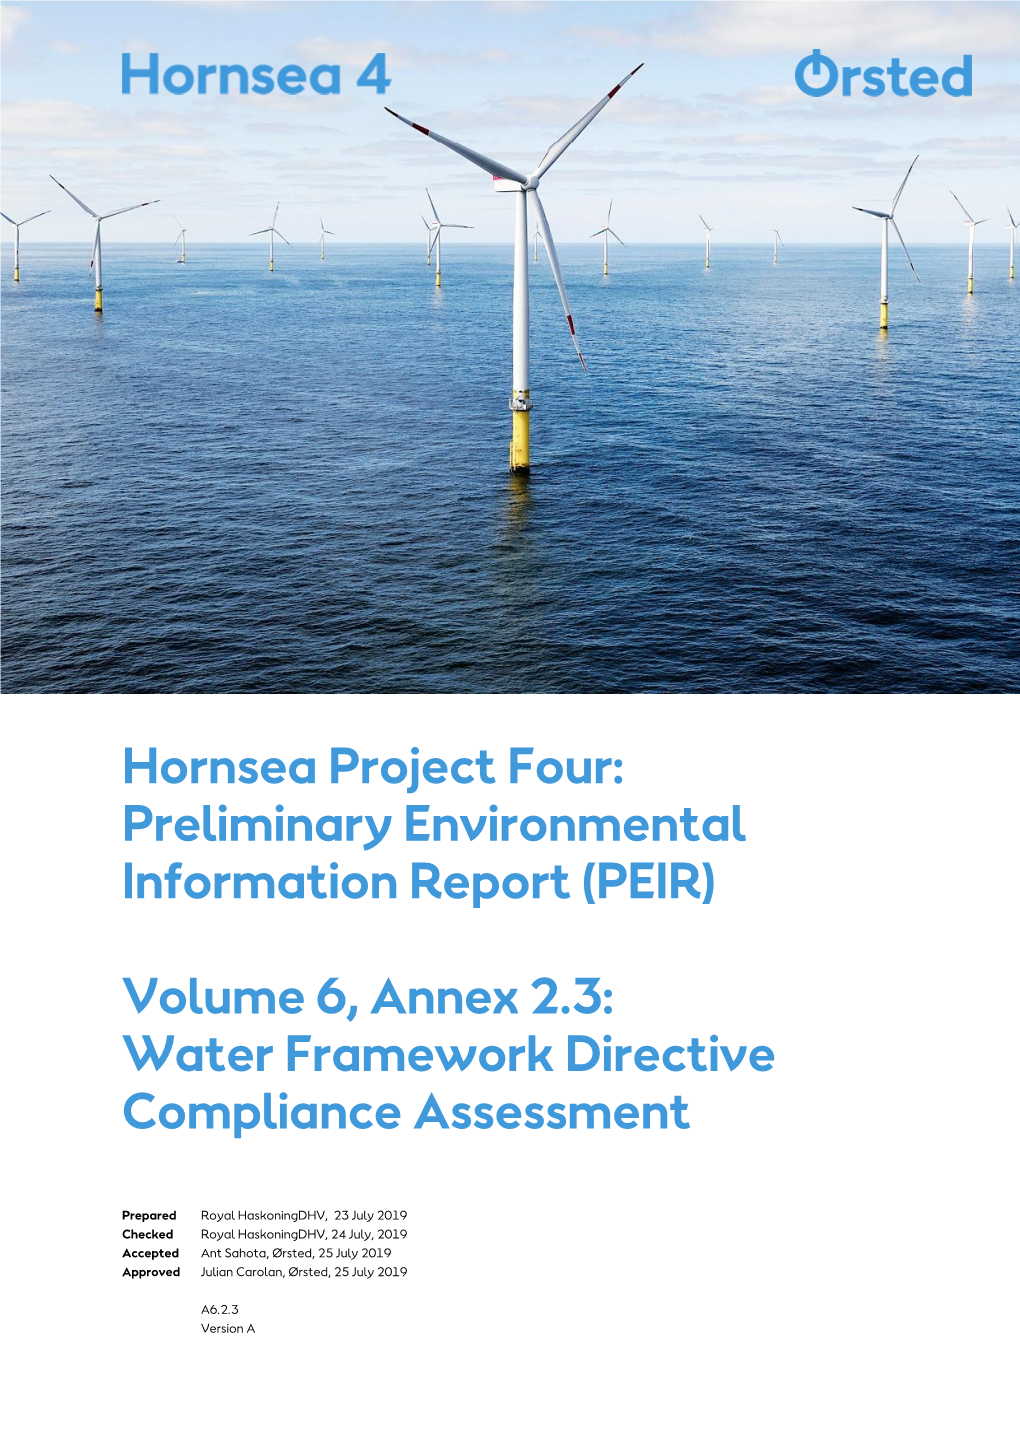 Water Framework Directive Compliance Assessment